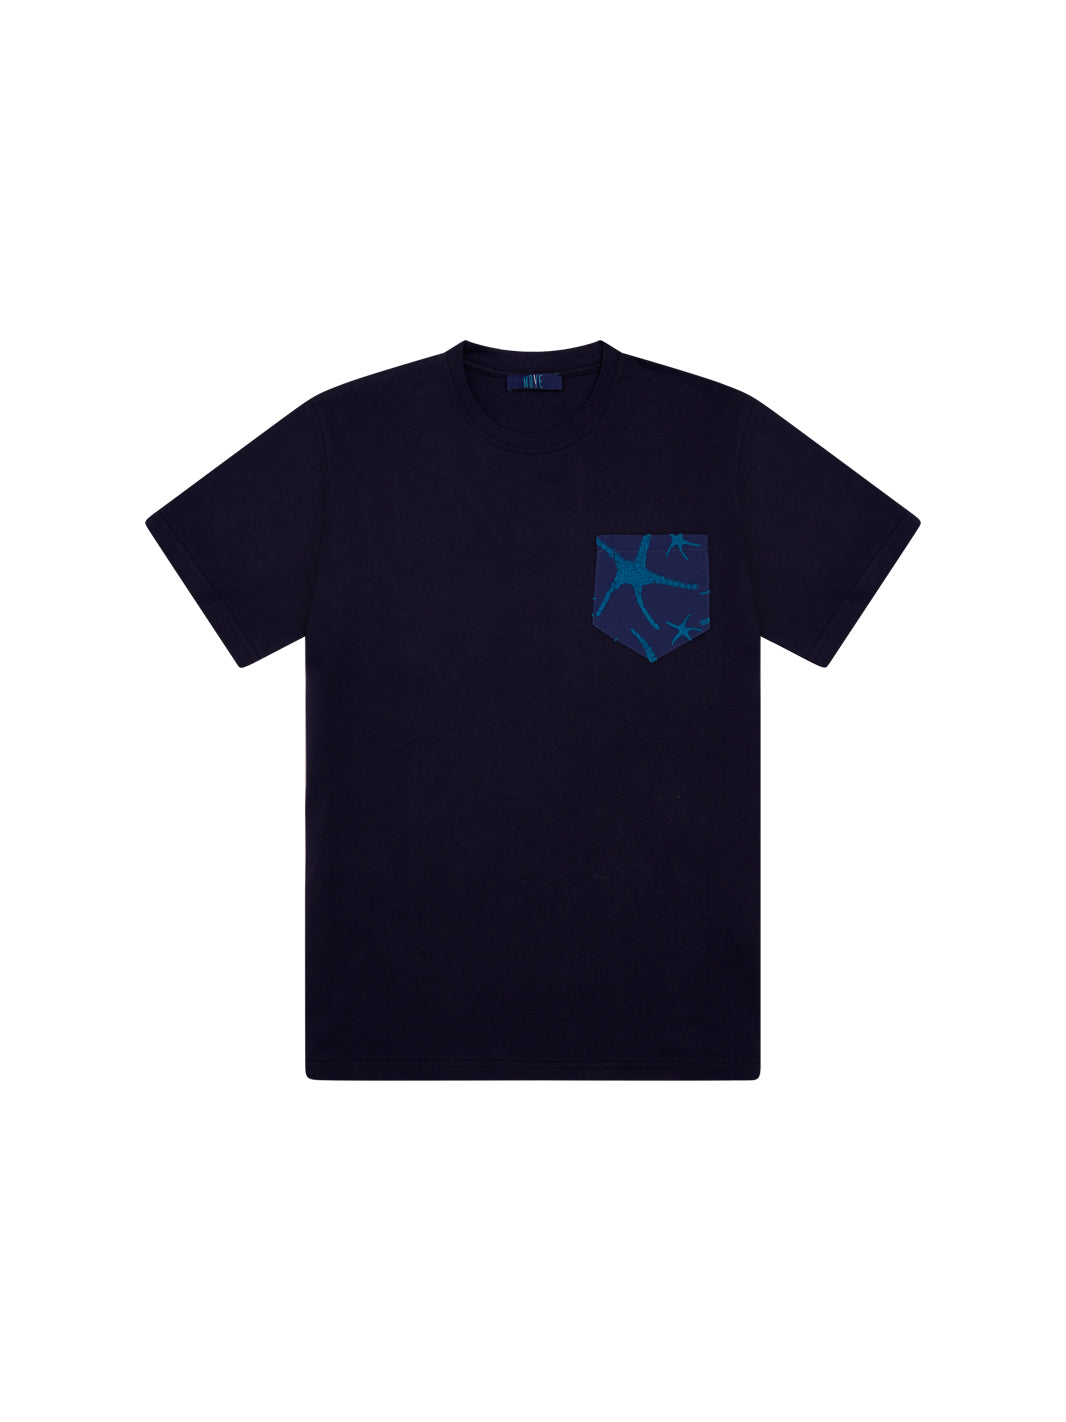 T-shirt blu taschino flock-TASCA BLU STELLA TURCH.